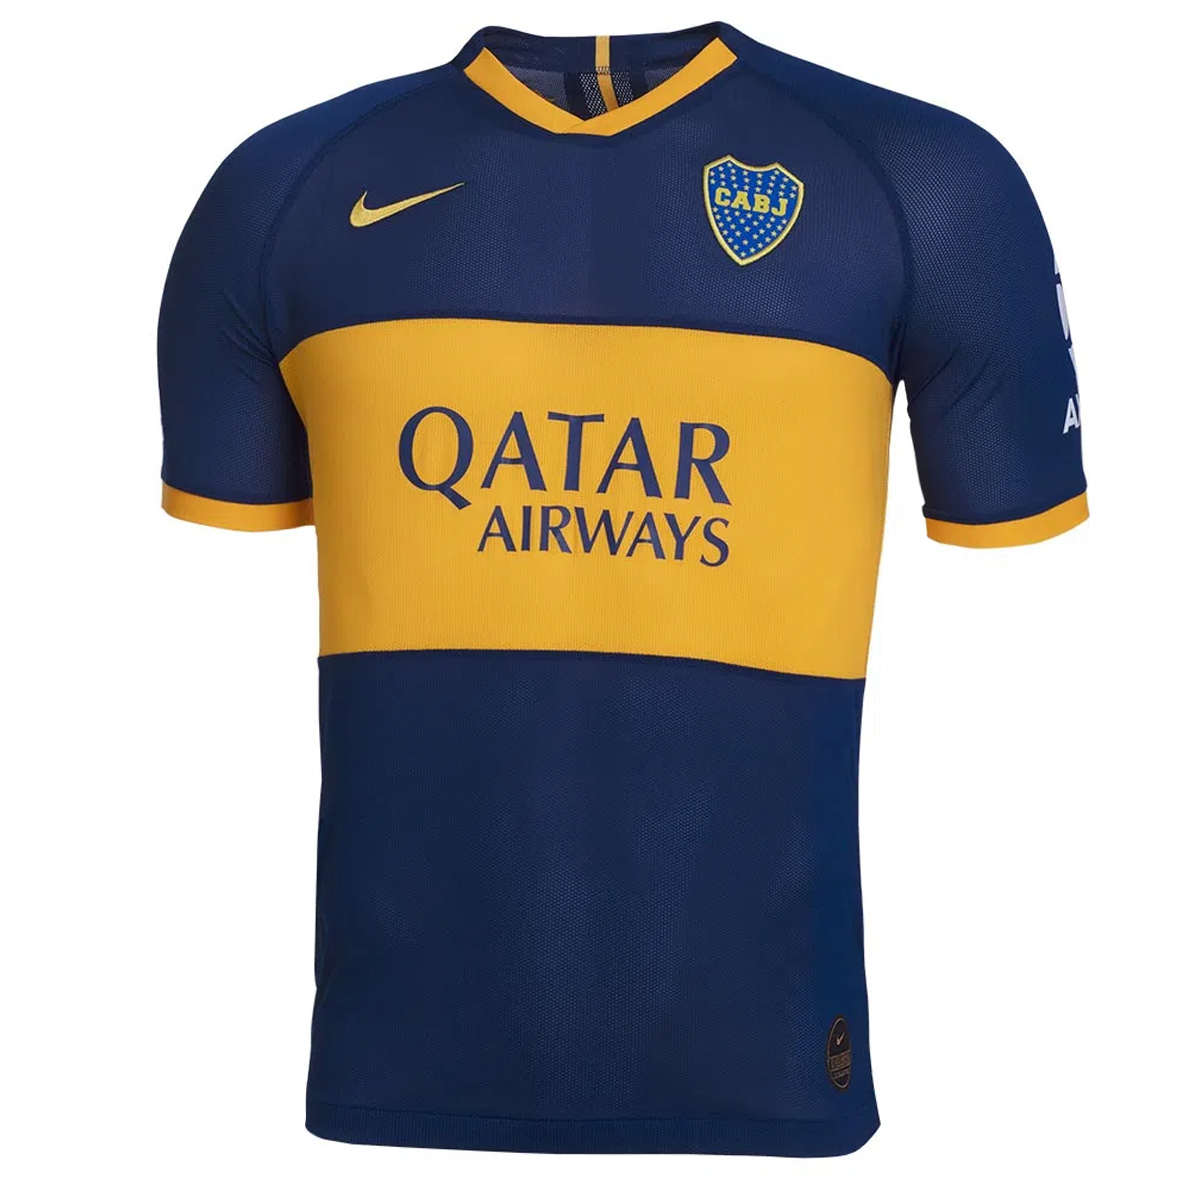 Camiseta Nike Boca Juniors Oficial Match,  image number null